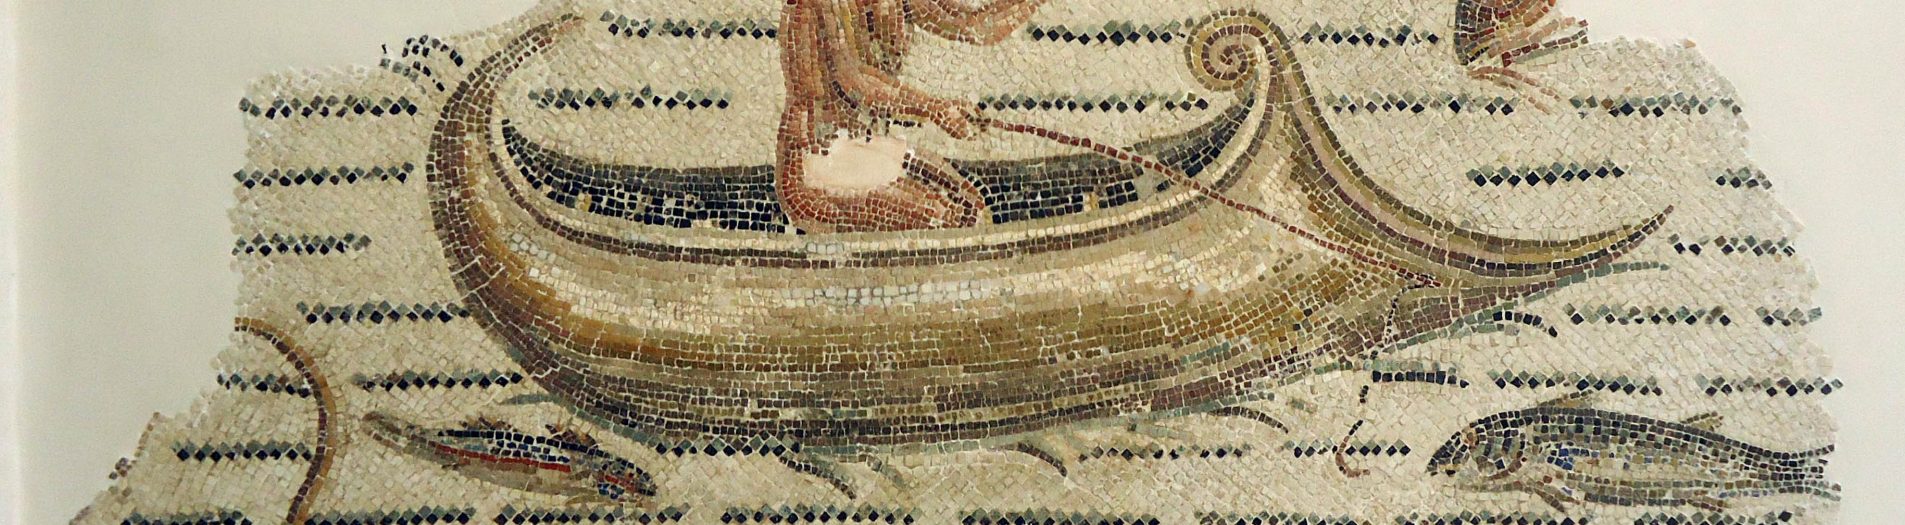 Les scènes de pêche et le commerce maritime dans les mosaïques africaines de l'époque romaine